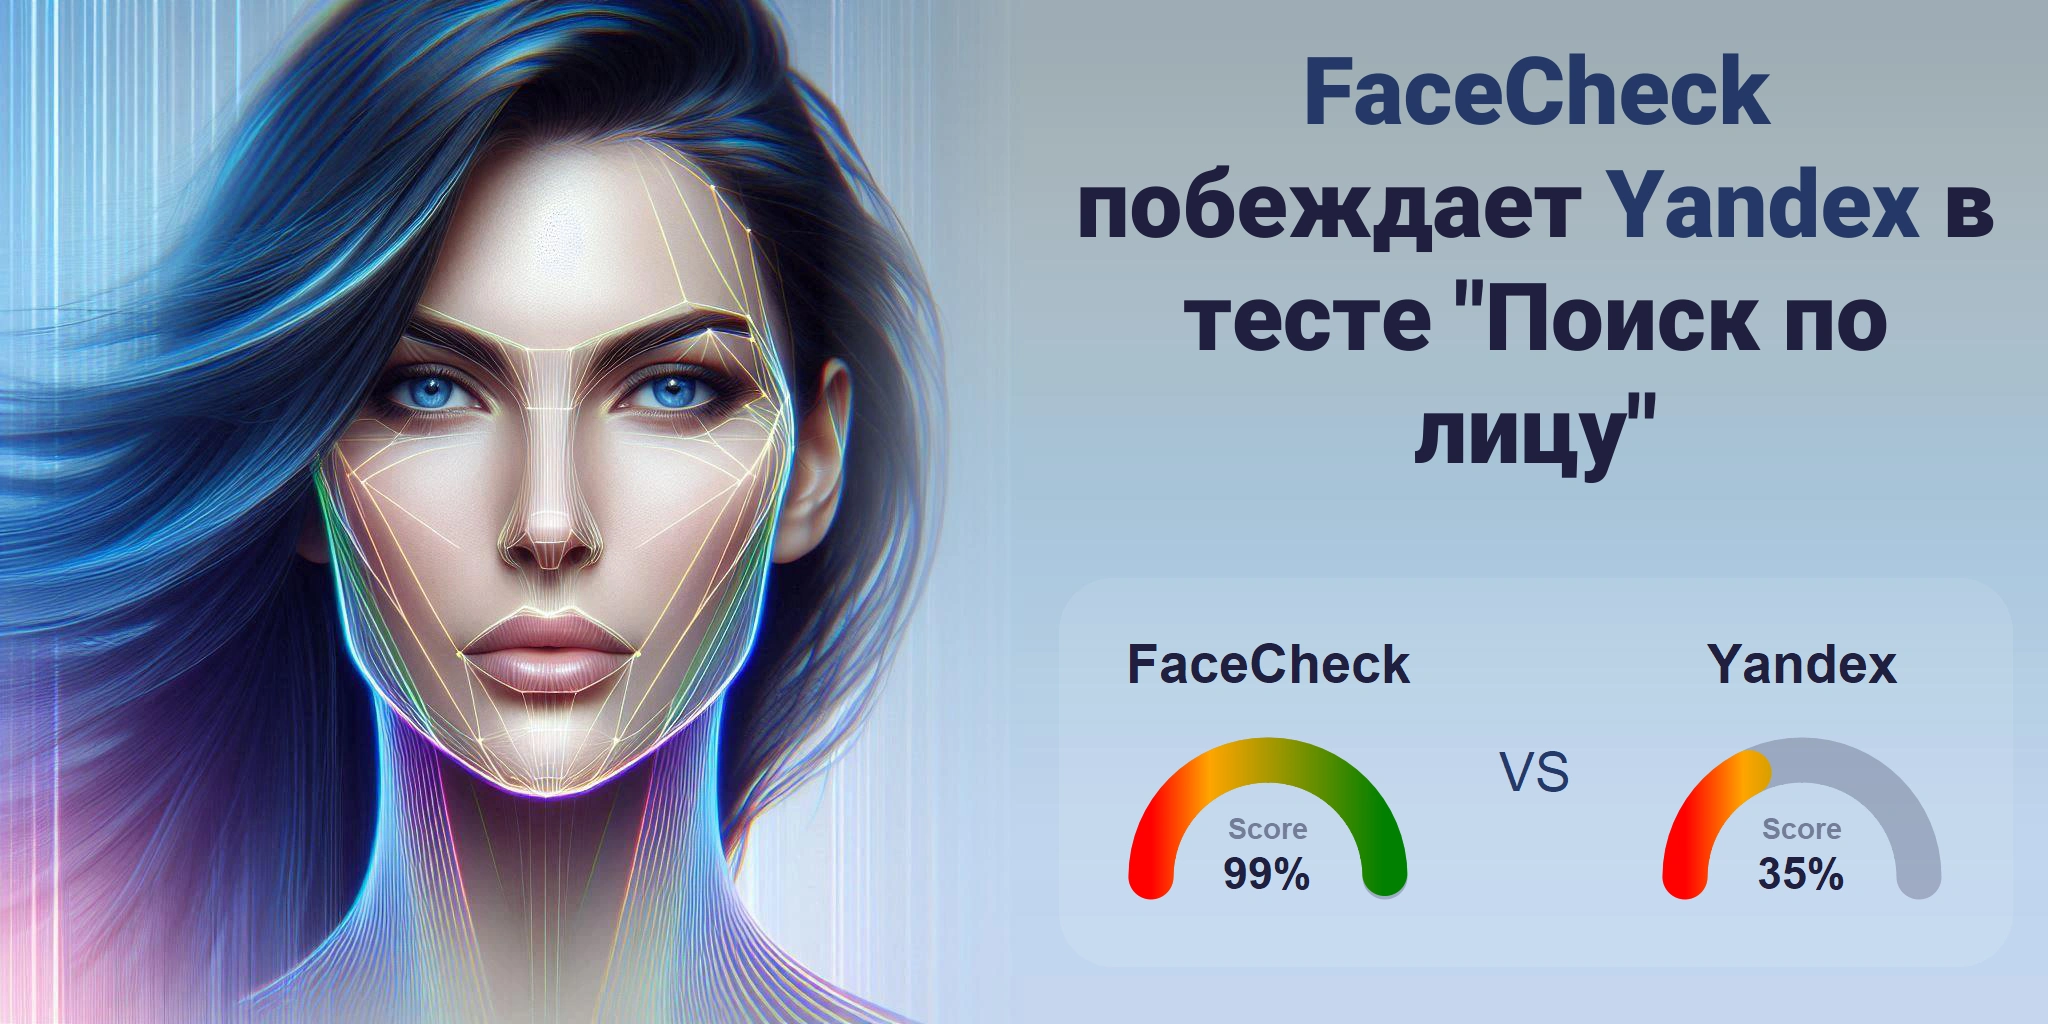 Что лучше для поиска по лицам: <br>FaceCheck или Yandex?